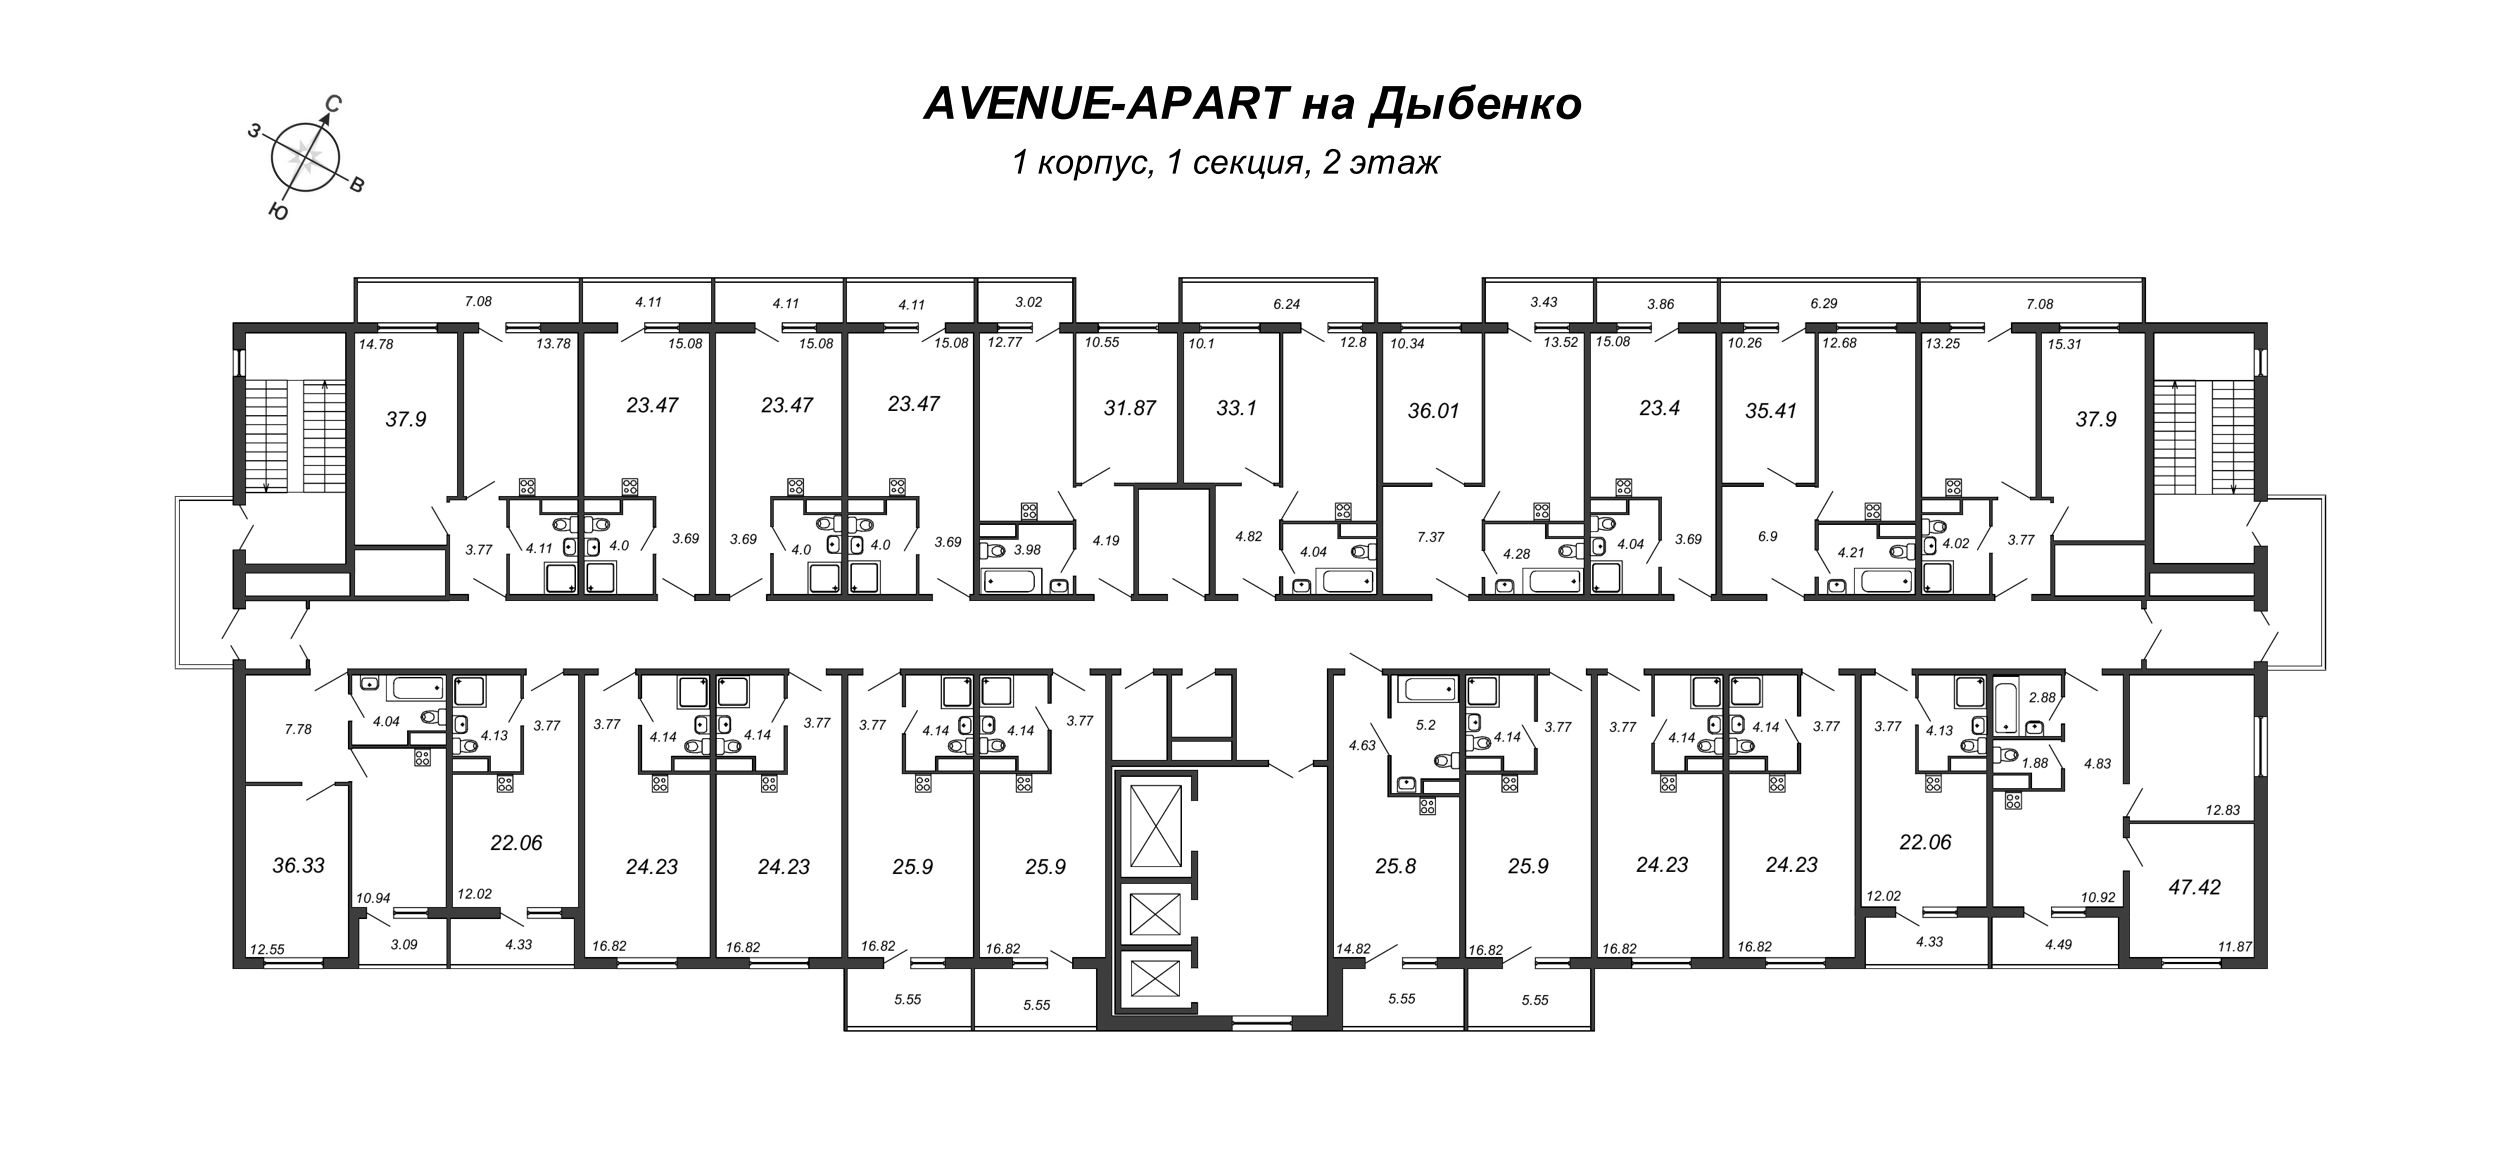 1-комнатная квартира, 37.12 м² в ЖК "Avenue-Apart на Дыбенко" - планировка этажа